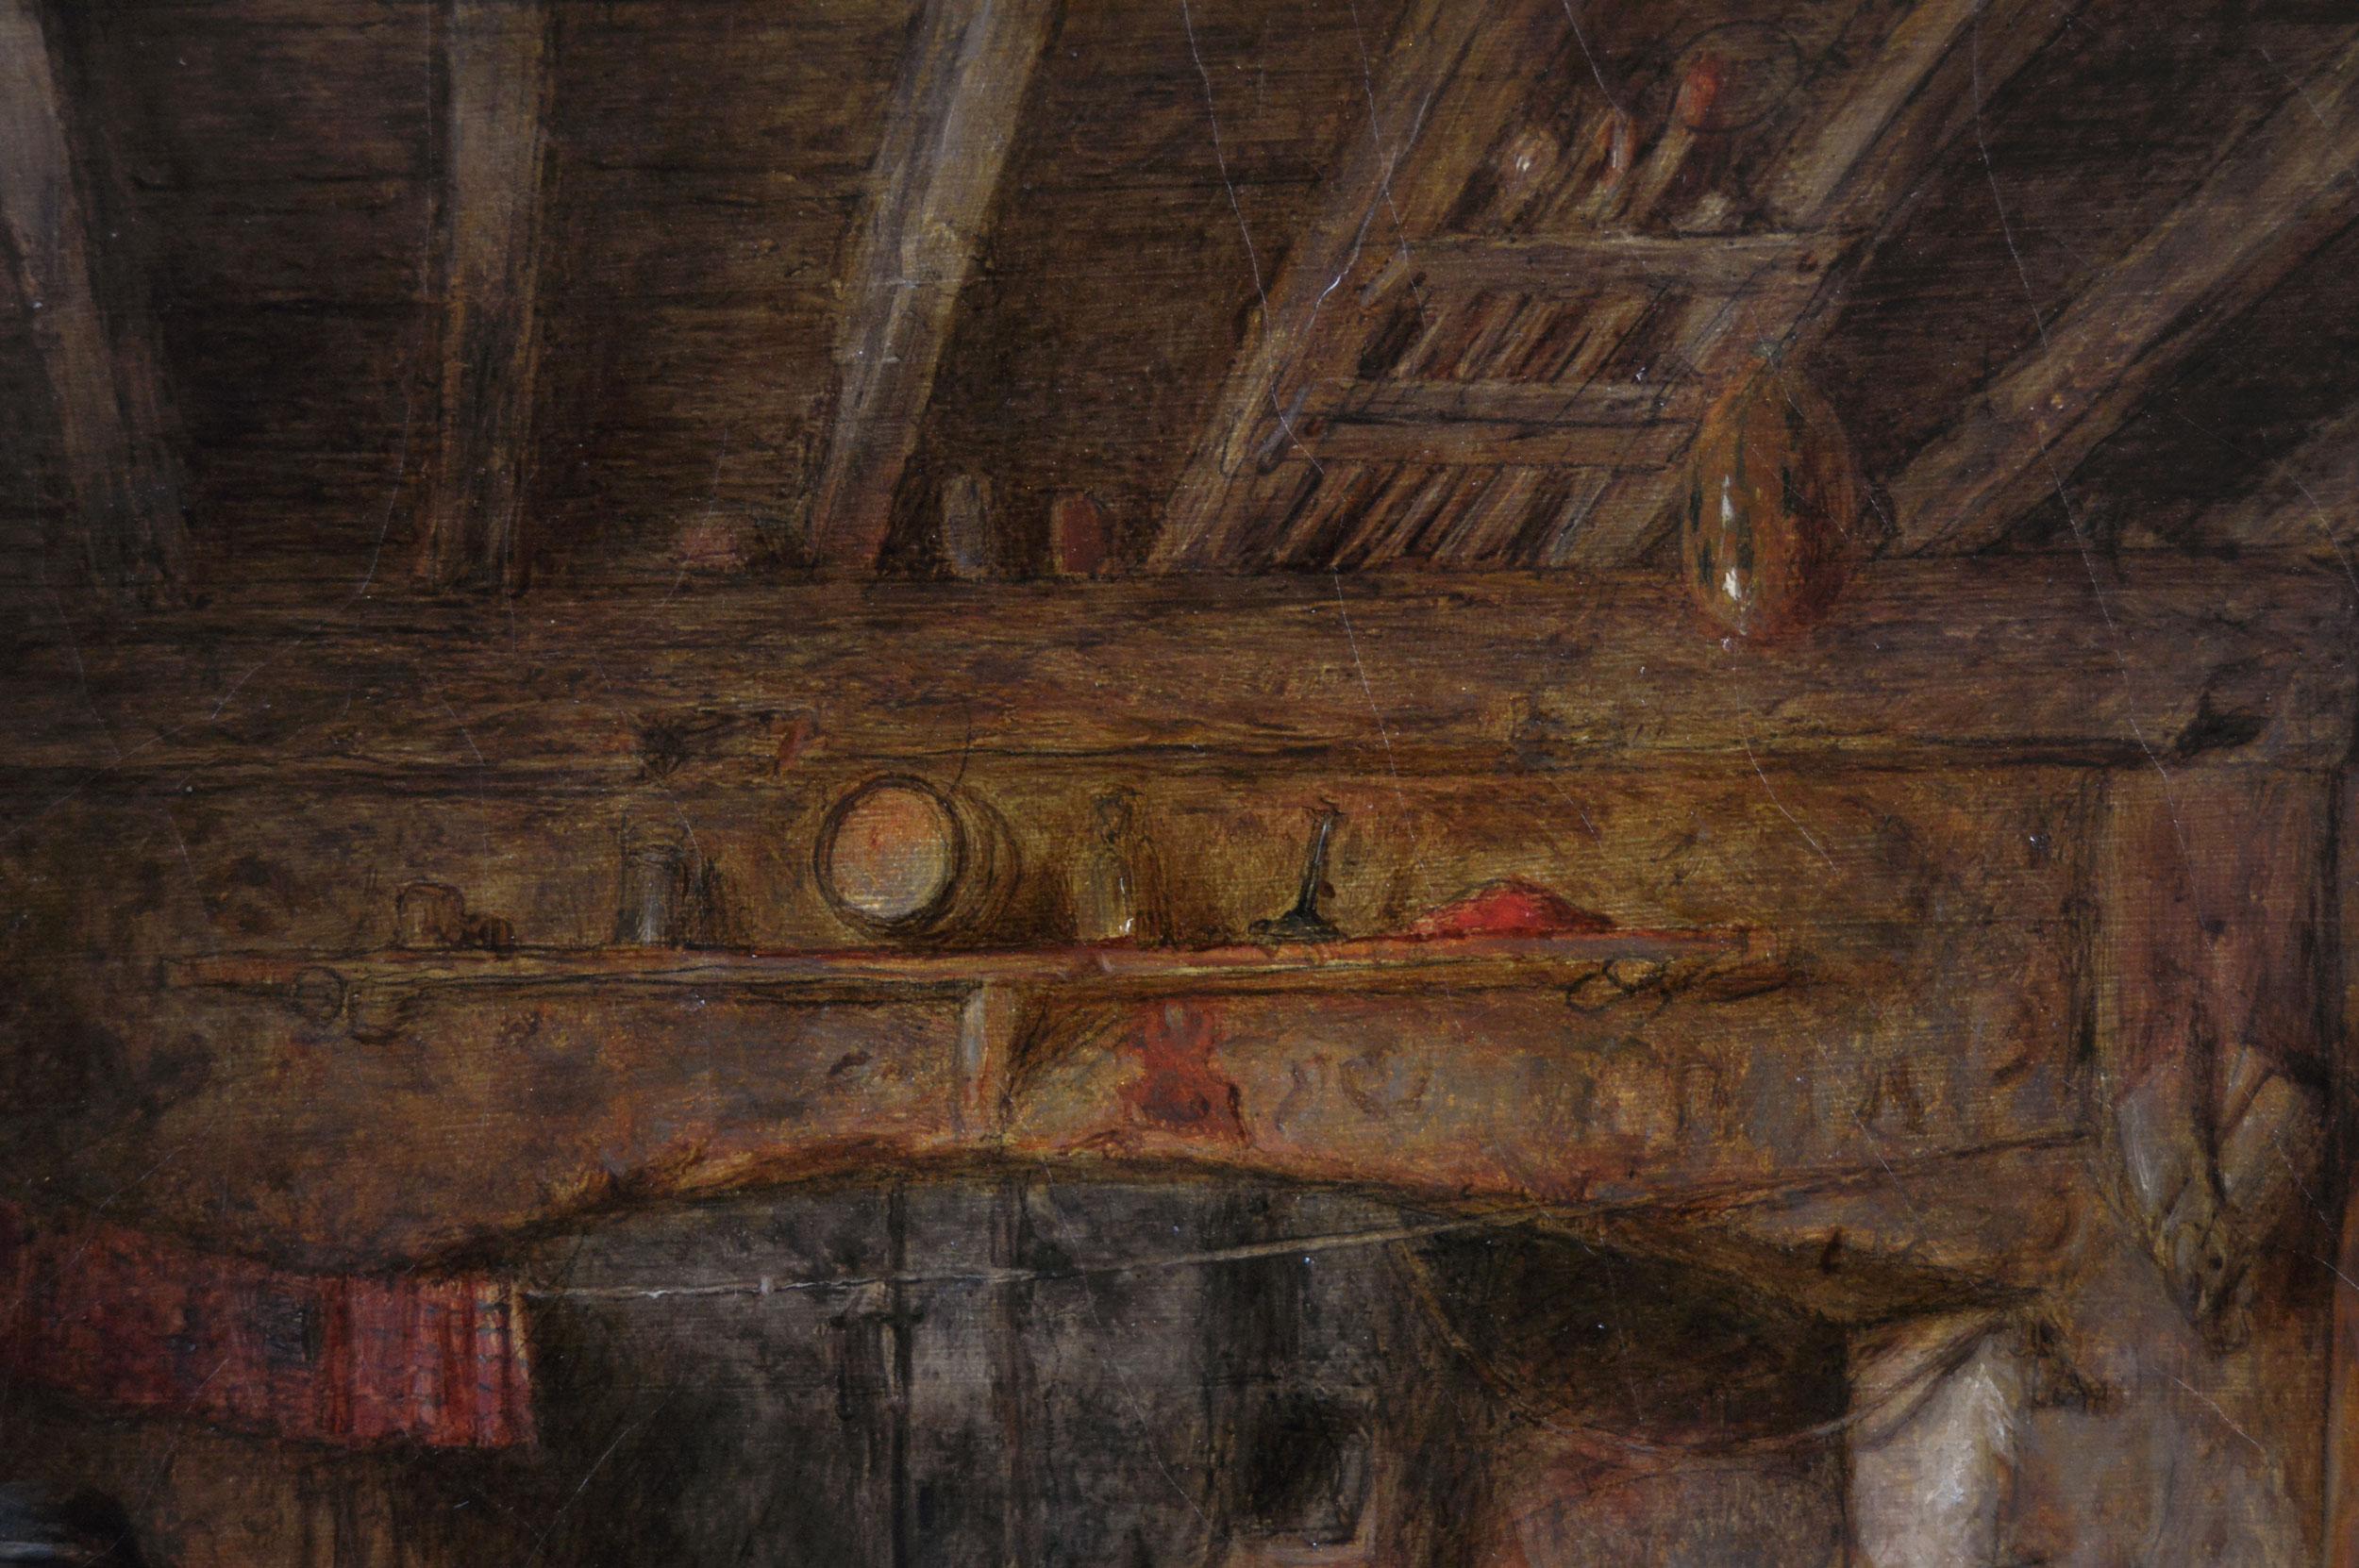 Alfred Provis
britisch, (1818-1890)
Am Kamin
Öl auf Leinwand, signiert und datiert 1869
Bildgröße: 10,5 Zoll x 15,5 Zoll 
Größe einschließlich Rahmen: 21,5 Zoll x 26,5 Zoll

Diese charmante Landhausszene von Alfred Provis zeigt eine Frau, die mit